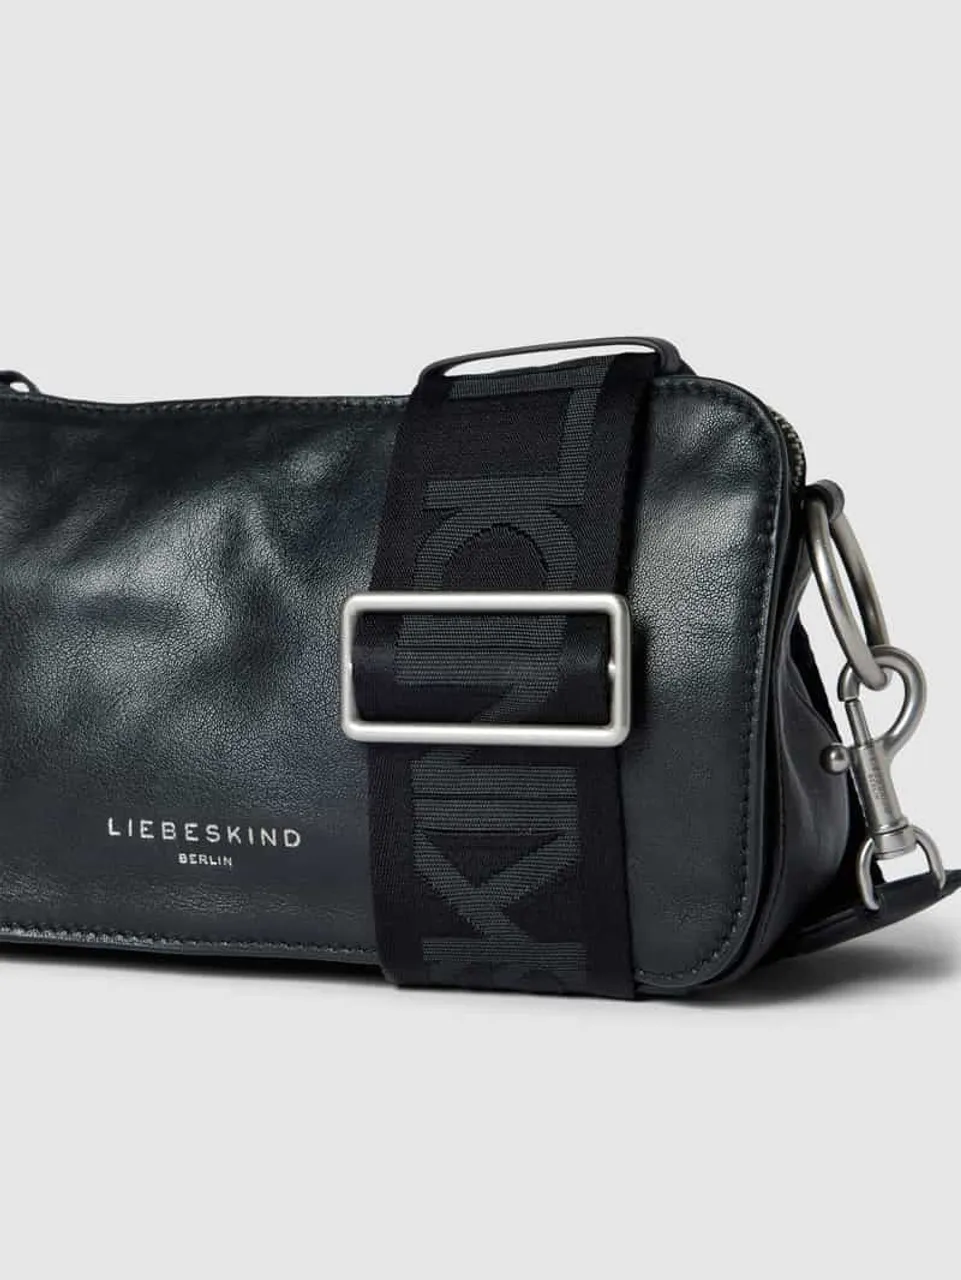 LIEBESKIND BERLIN Handtasche mit Label-Details Modell 'Clarice' in Black, Größe One Size